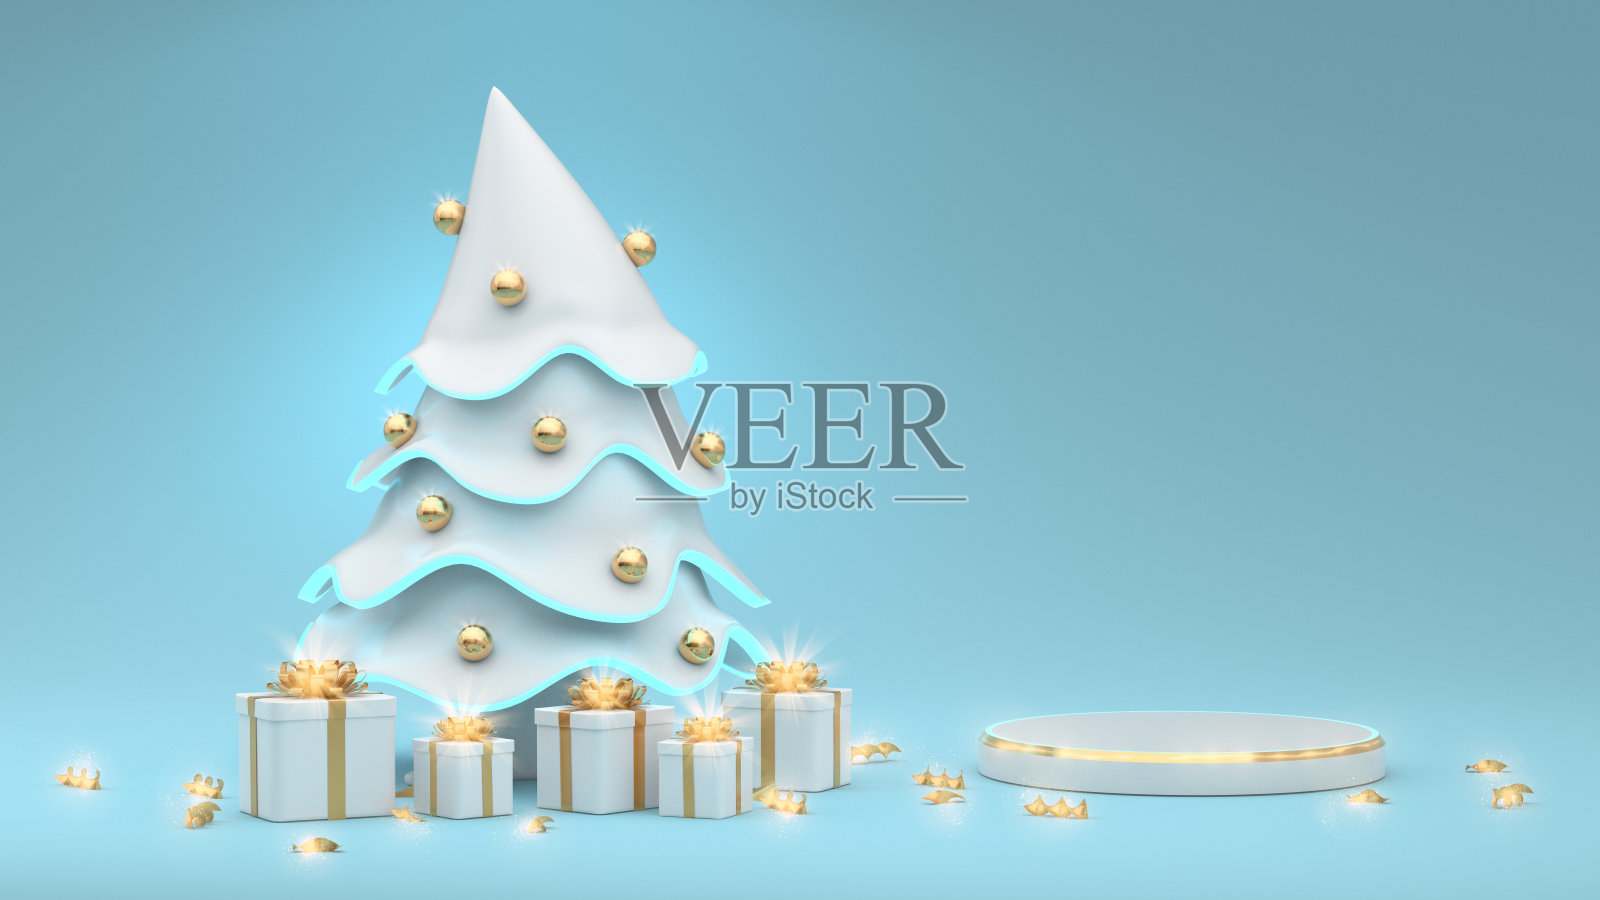 这是一幅精美的抽象插图，展示了圣诞和新年的t台秀，一棵白色圣诞树上装饰着金球和礼物。节日的魔幻气氛在横幅上。三维渲染照片摄影图片